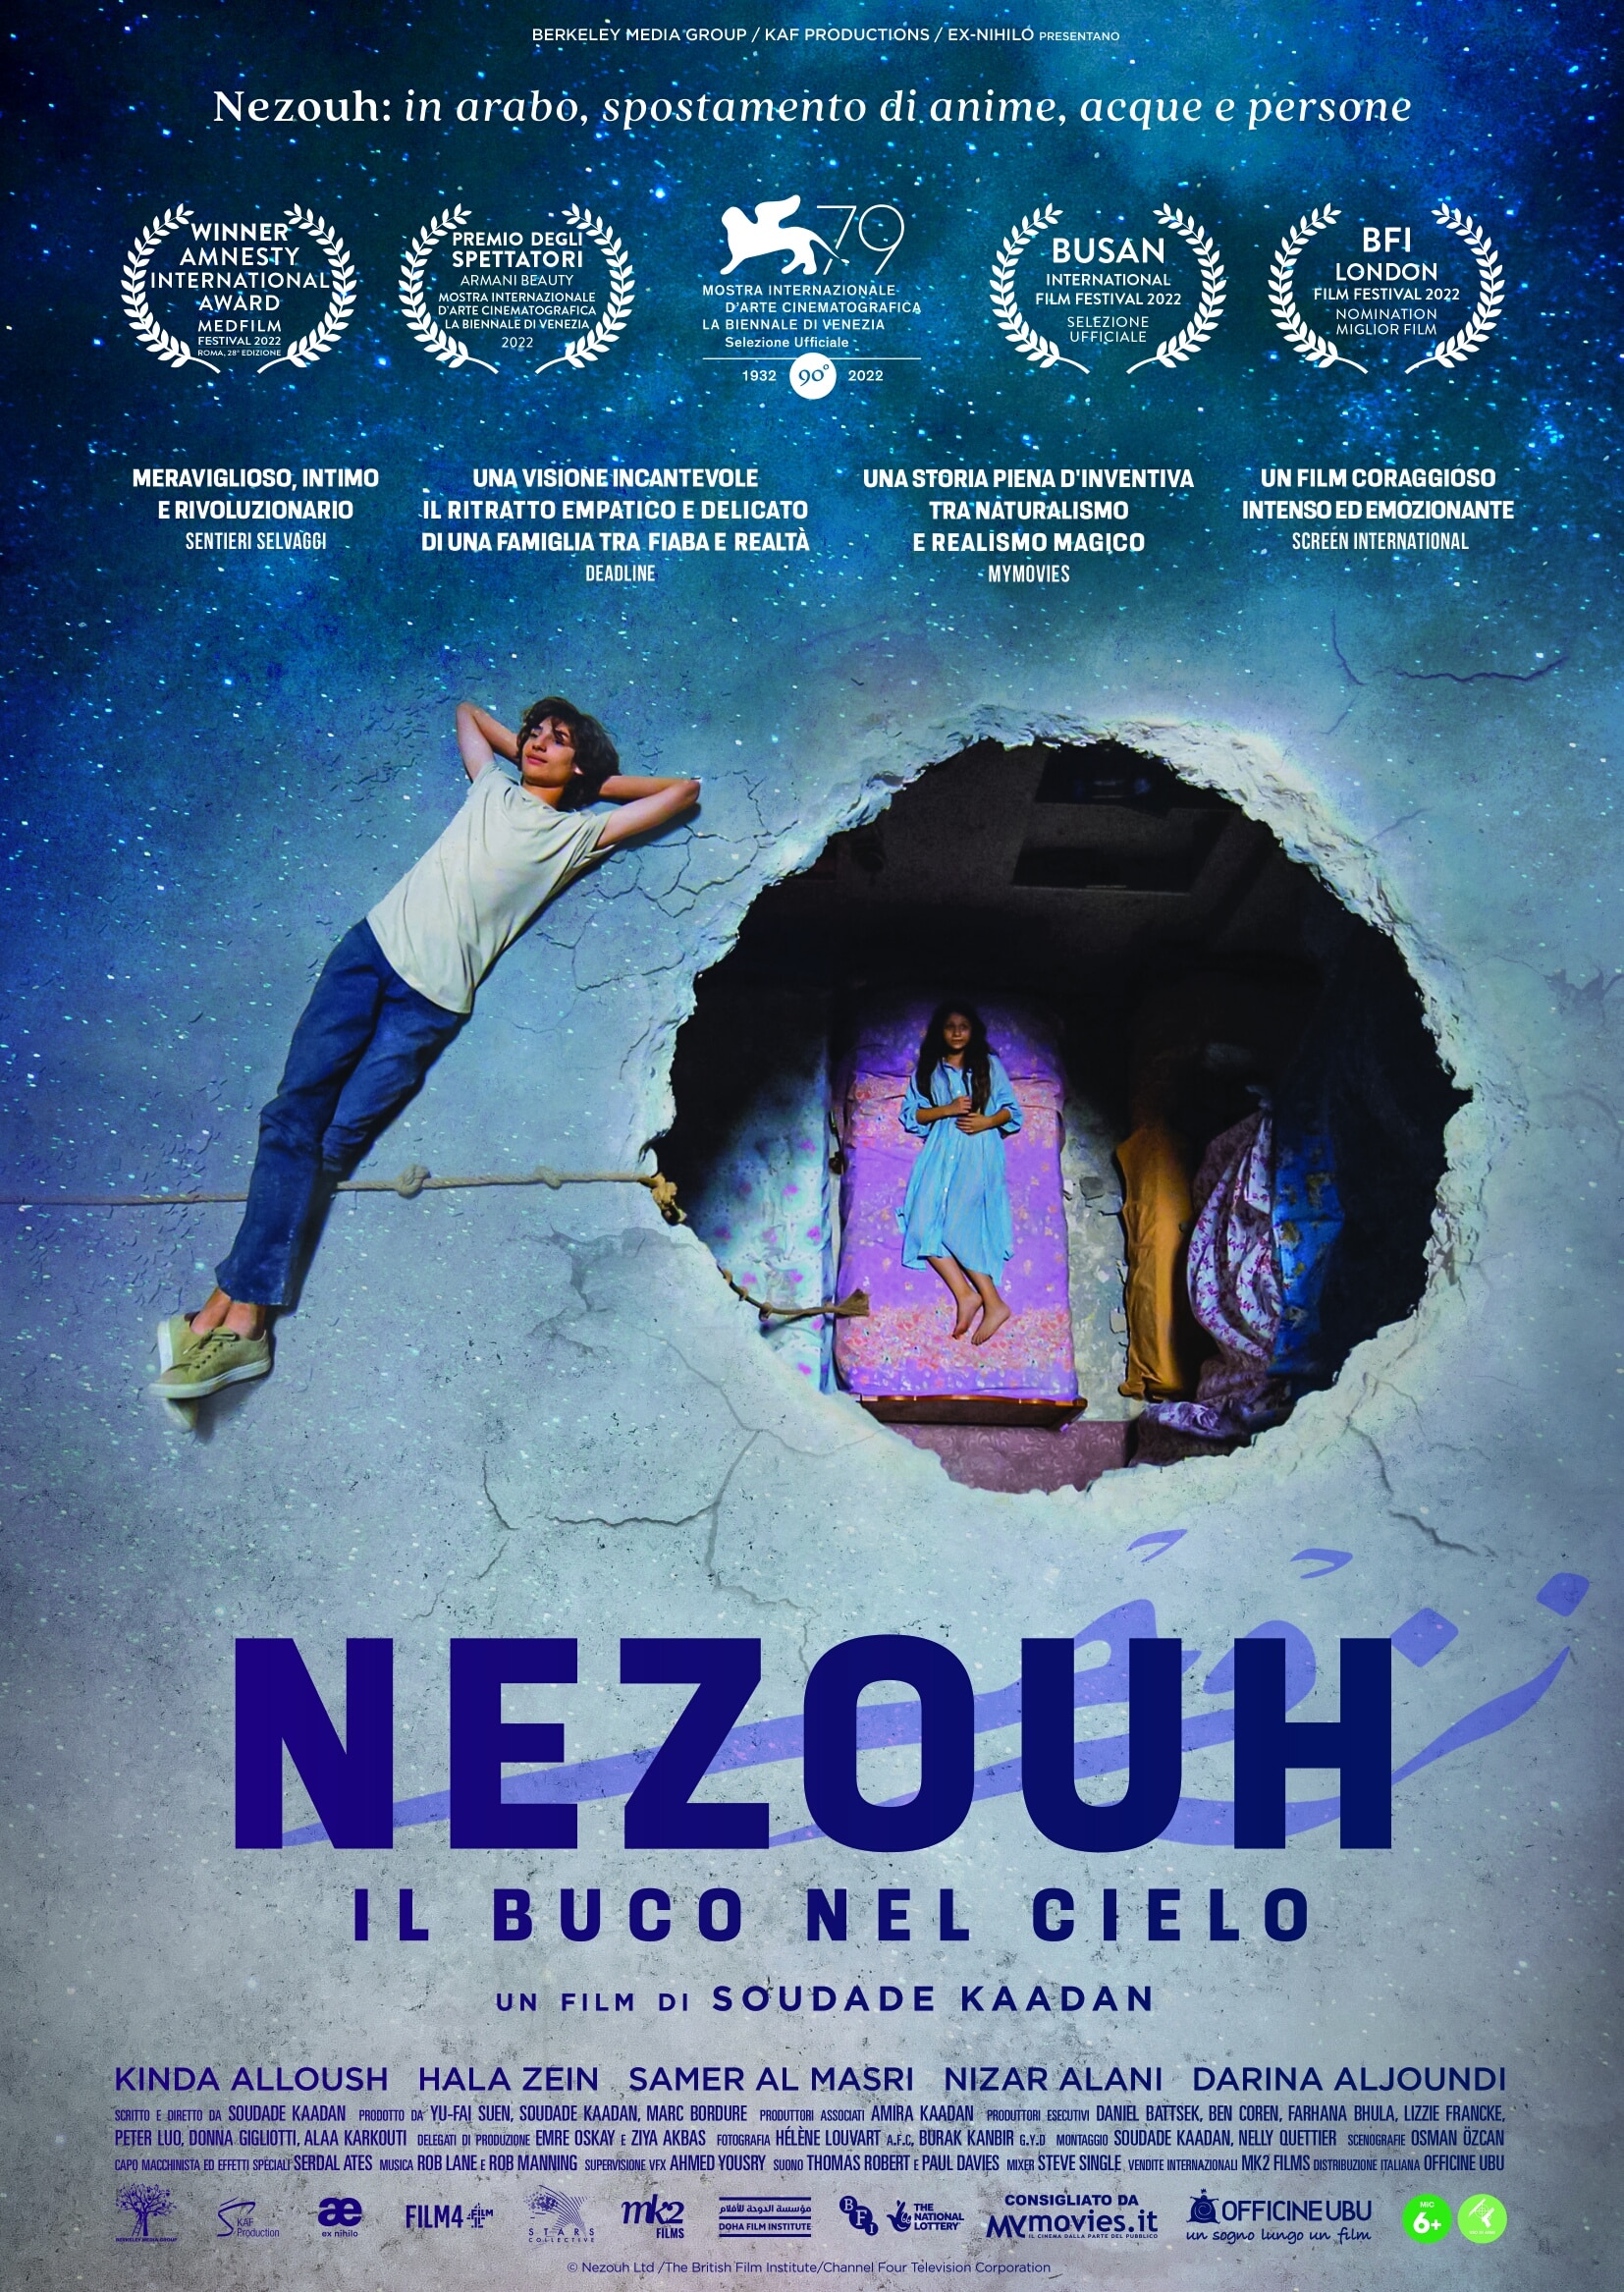 Nezouh - Il buco nel cielo